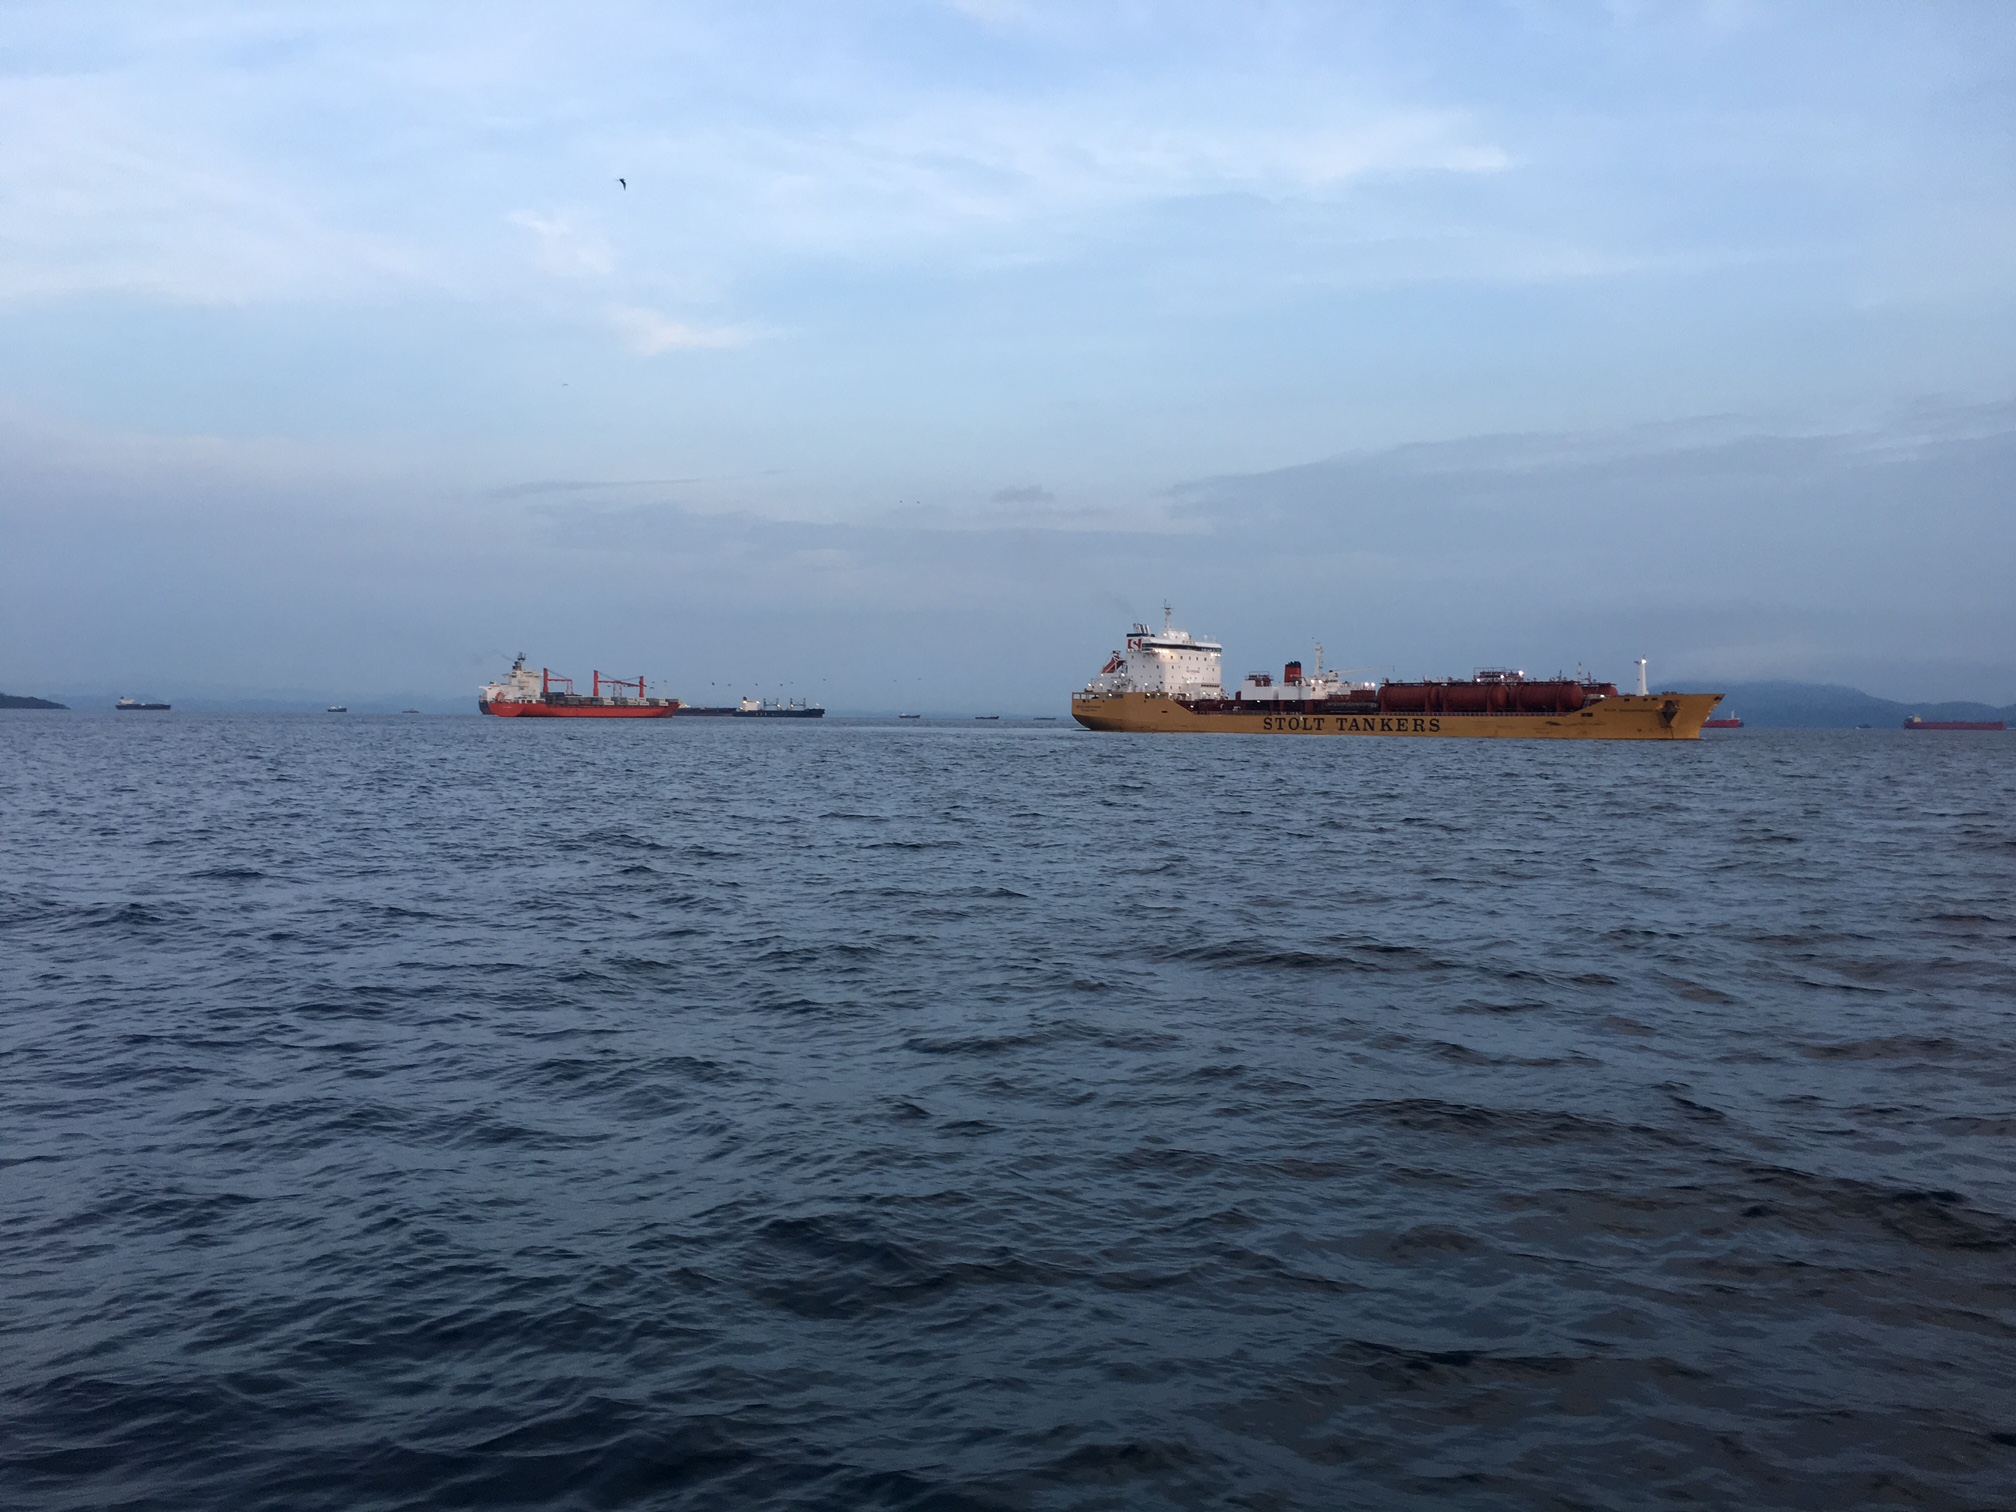 Ships gathering at entrance to Panama Canal